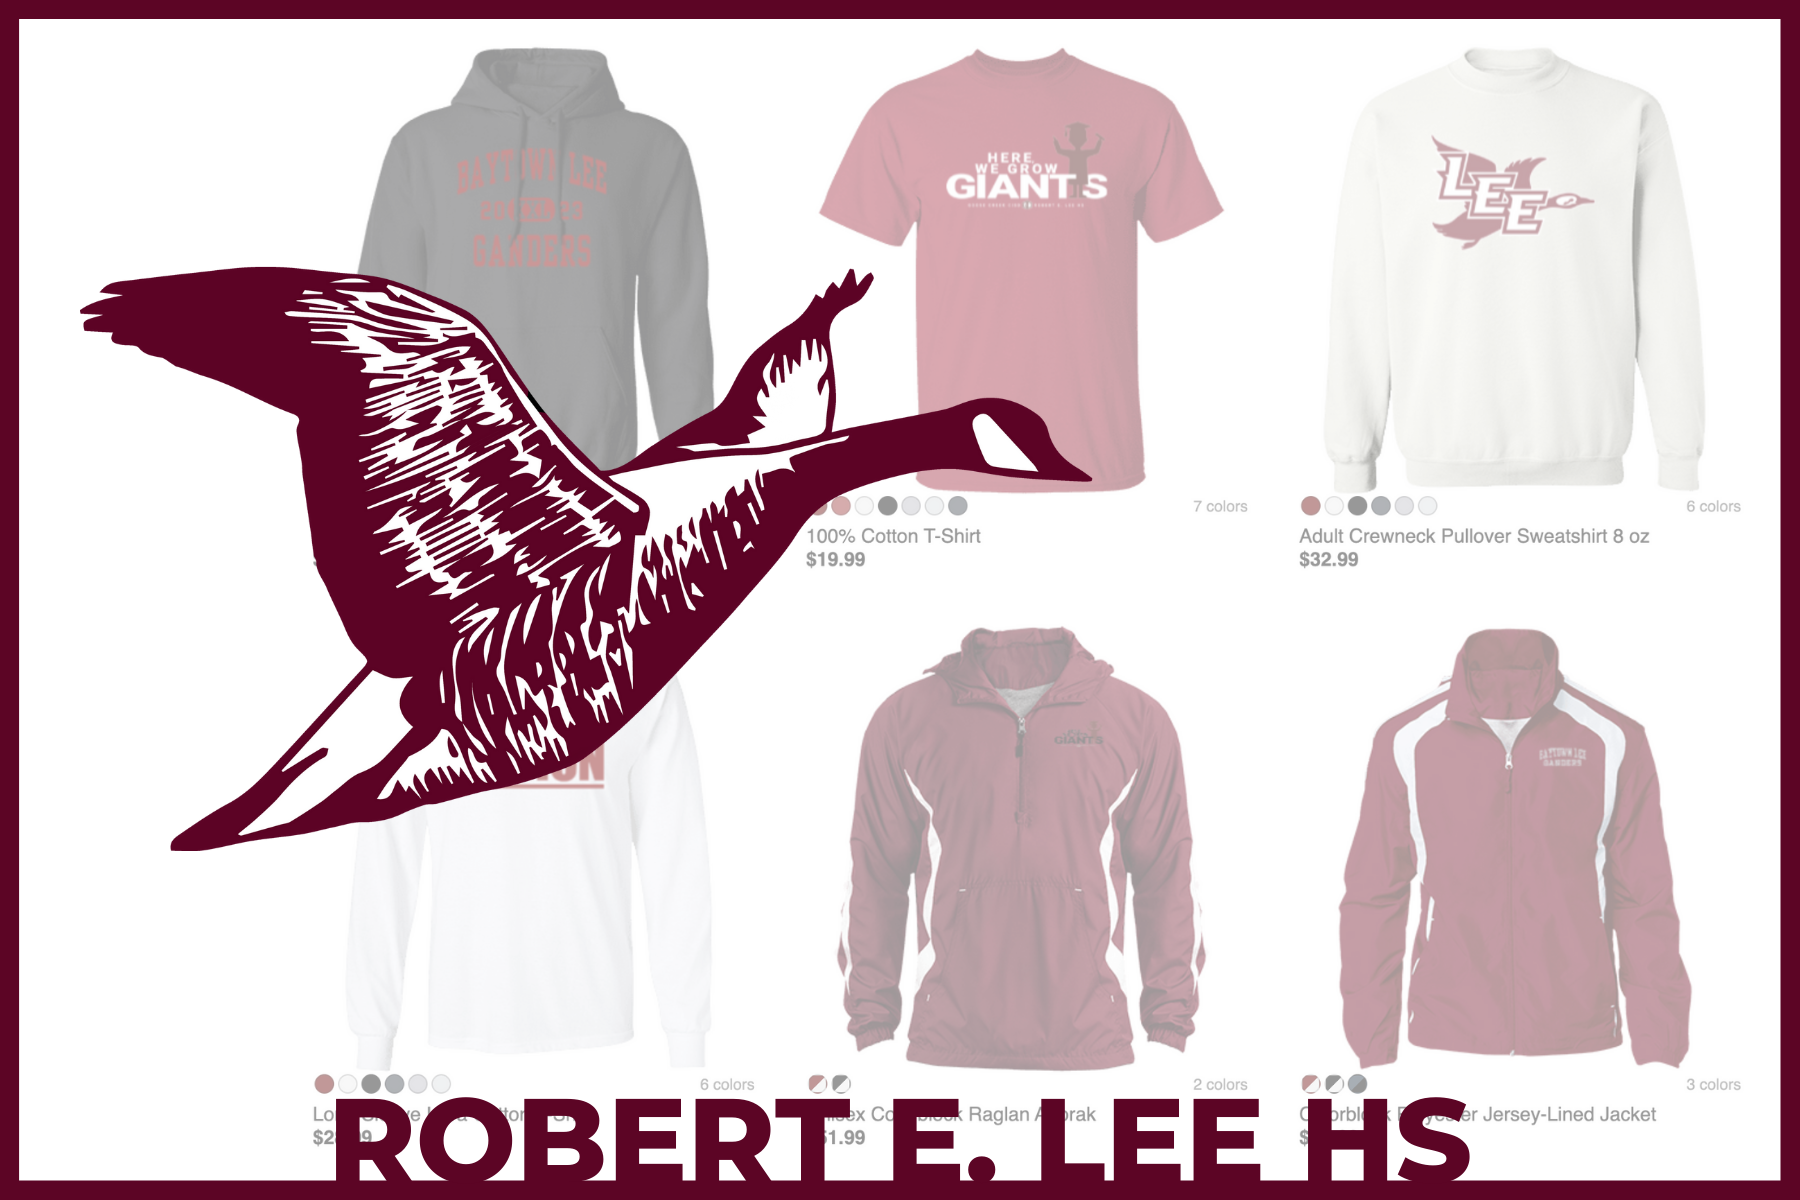 Robert E. Lee HS